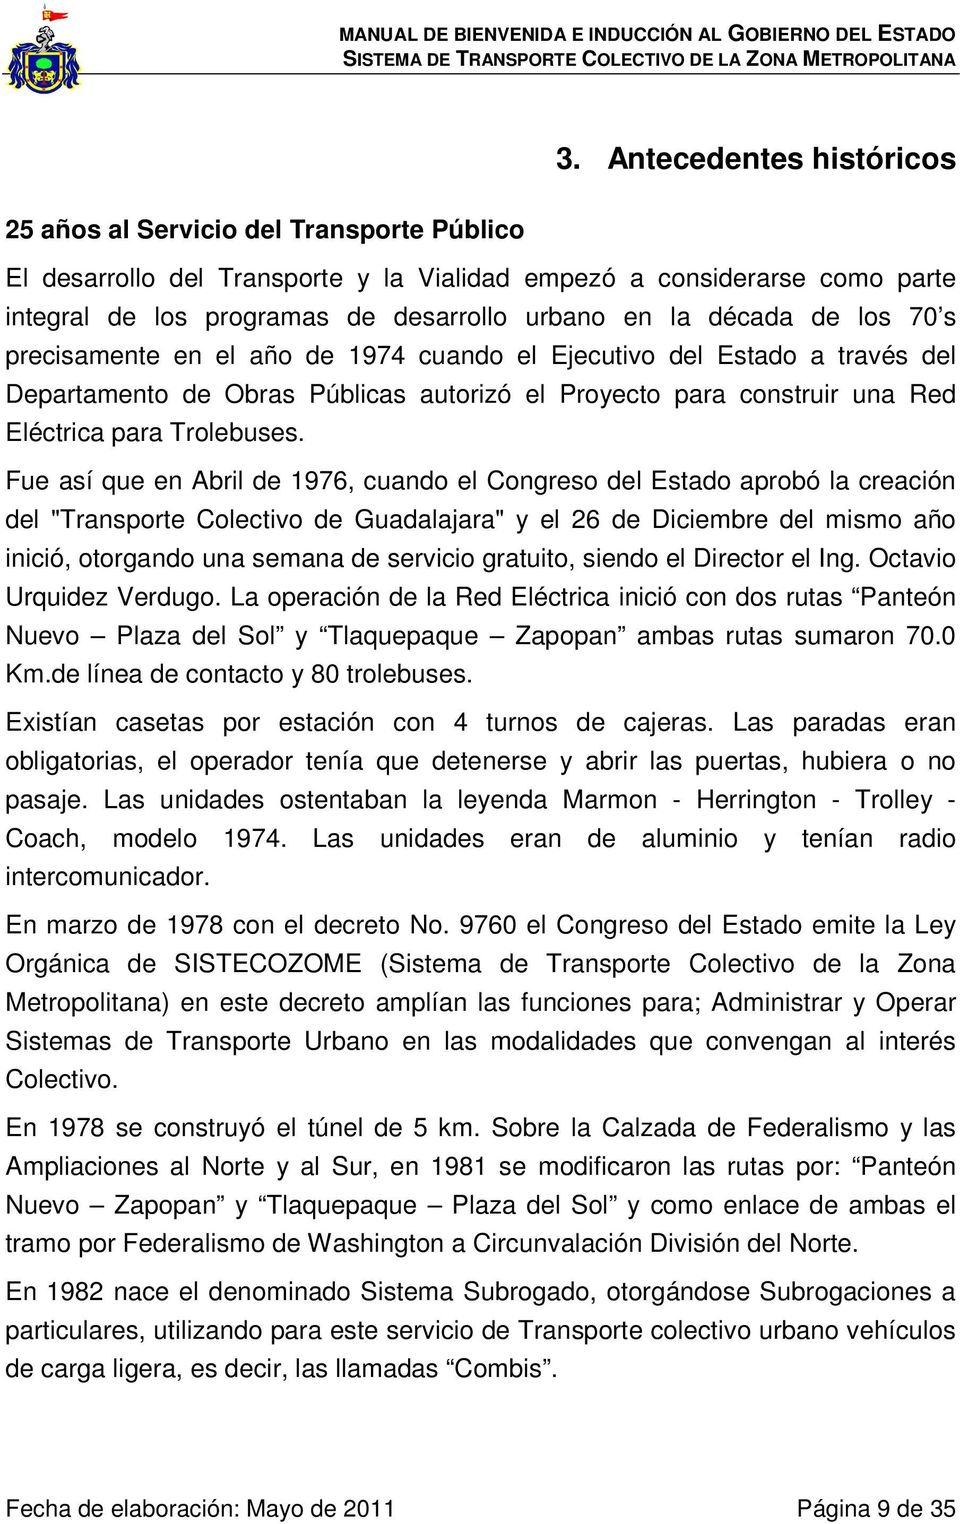 Fue así que en Abril de 1976, cuando el Congreso del Estado aprobó la creación del "Transporte Colectivo de Guadalajara" y el 26 de Diciembre del mismo año inició, otorgando una semana de servicio